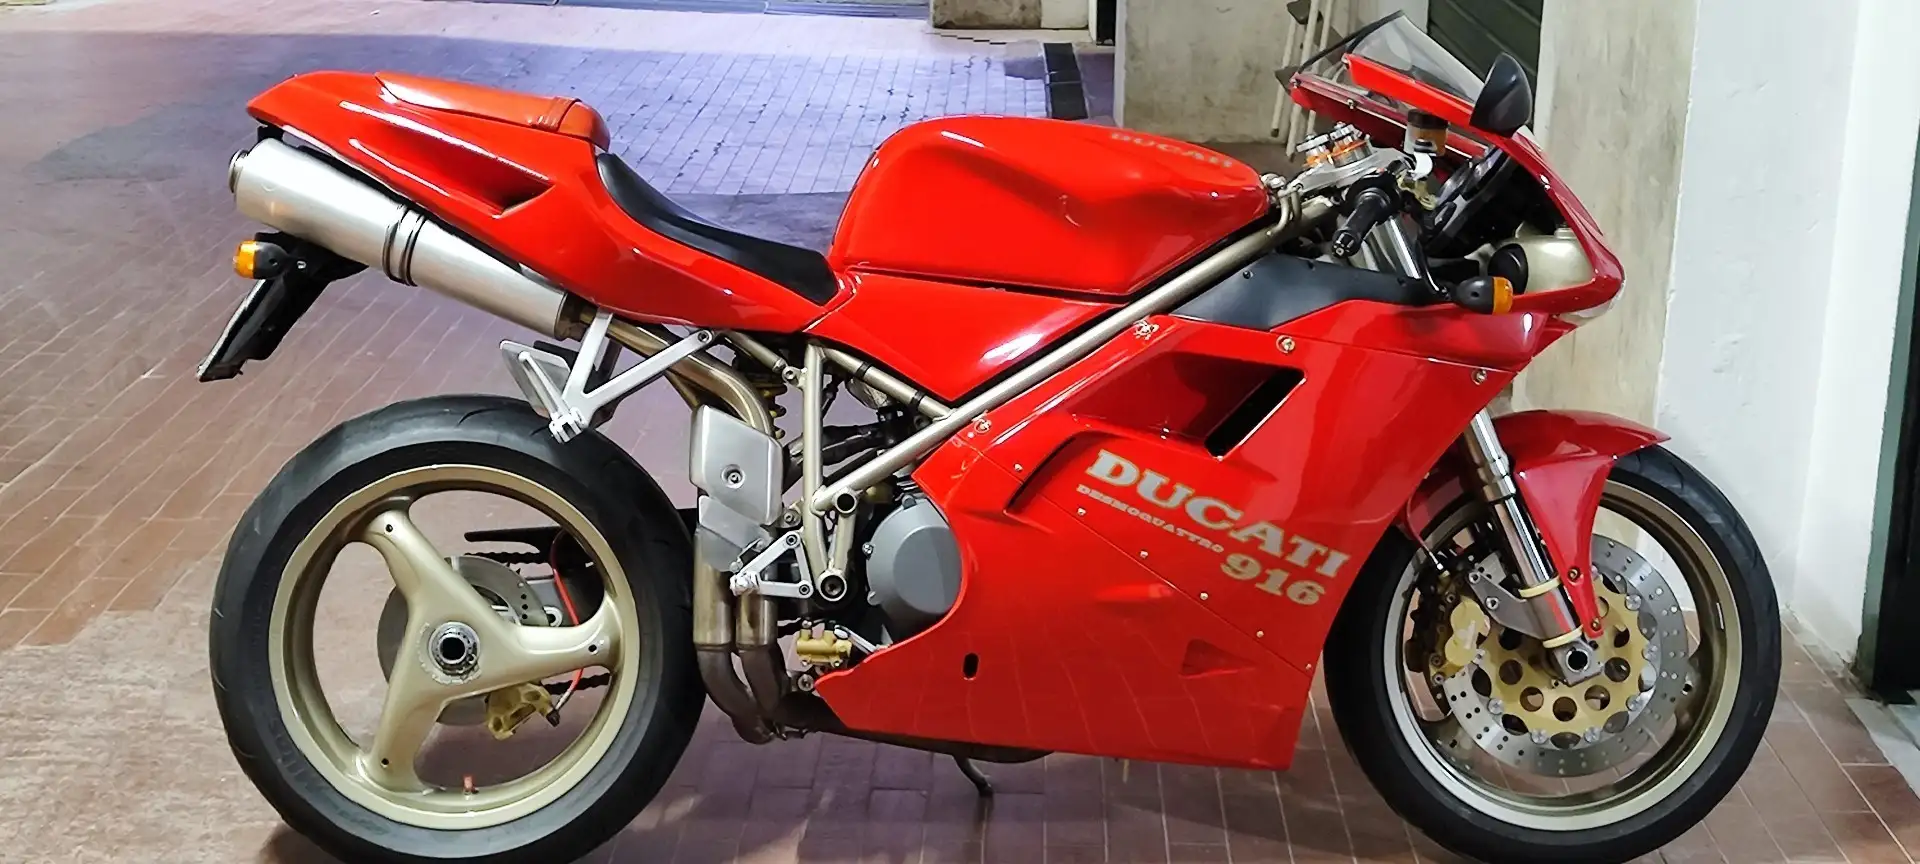 Ducati 916 Biposto Red - 1